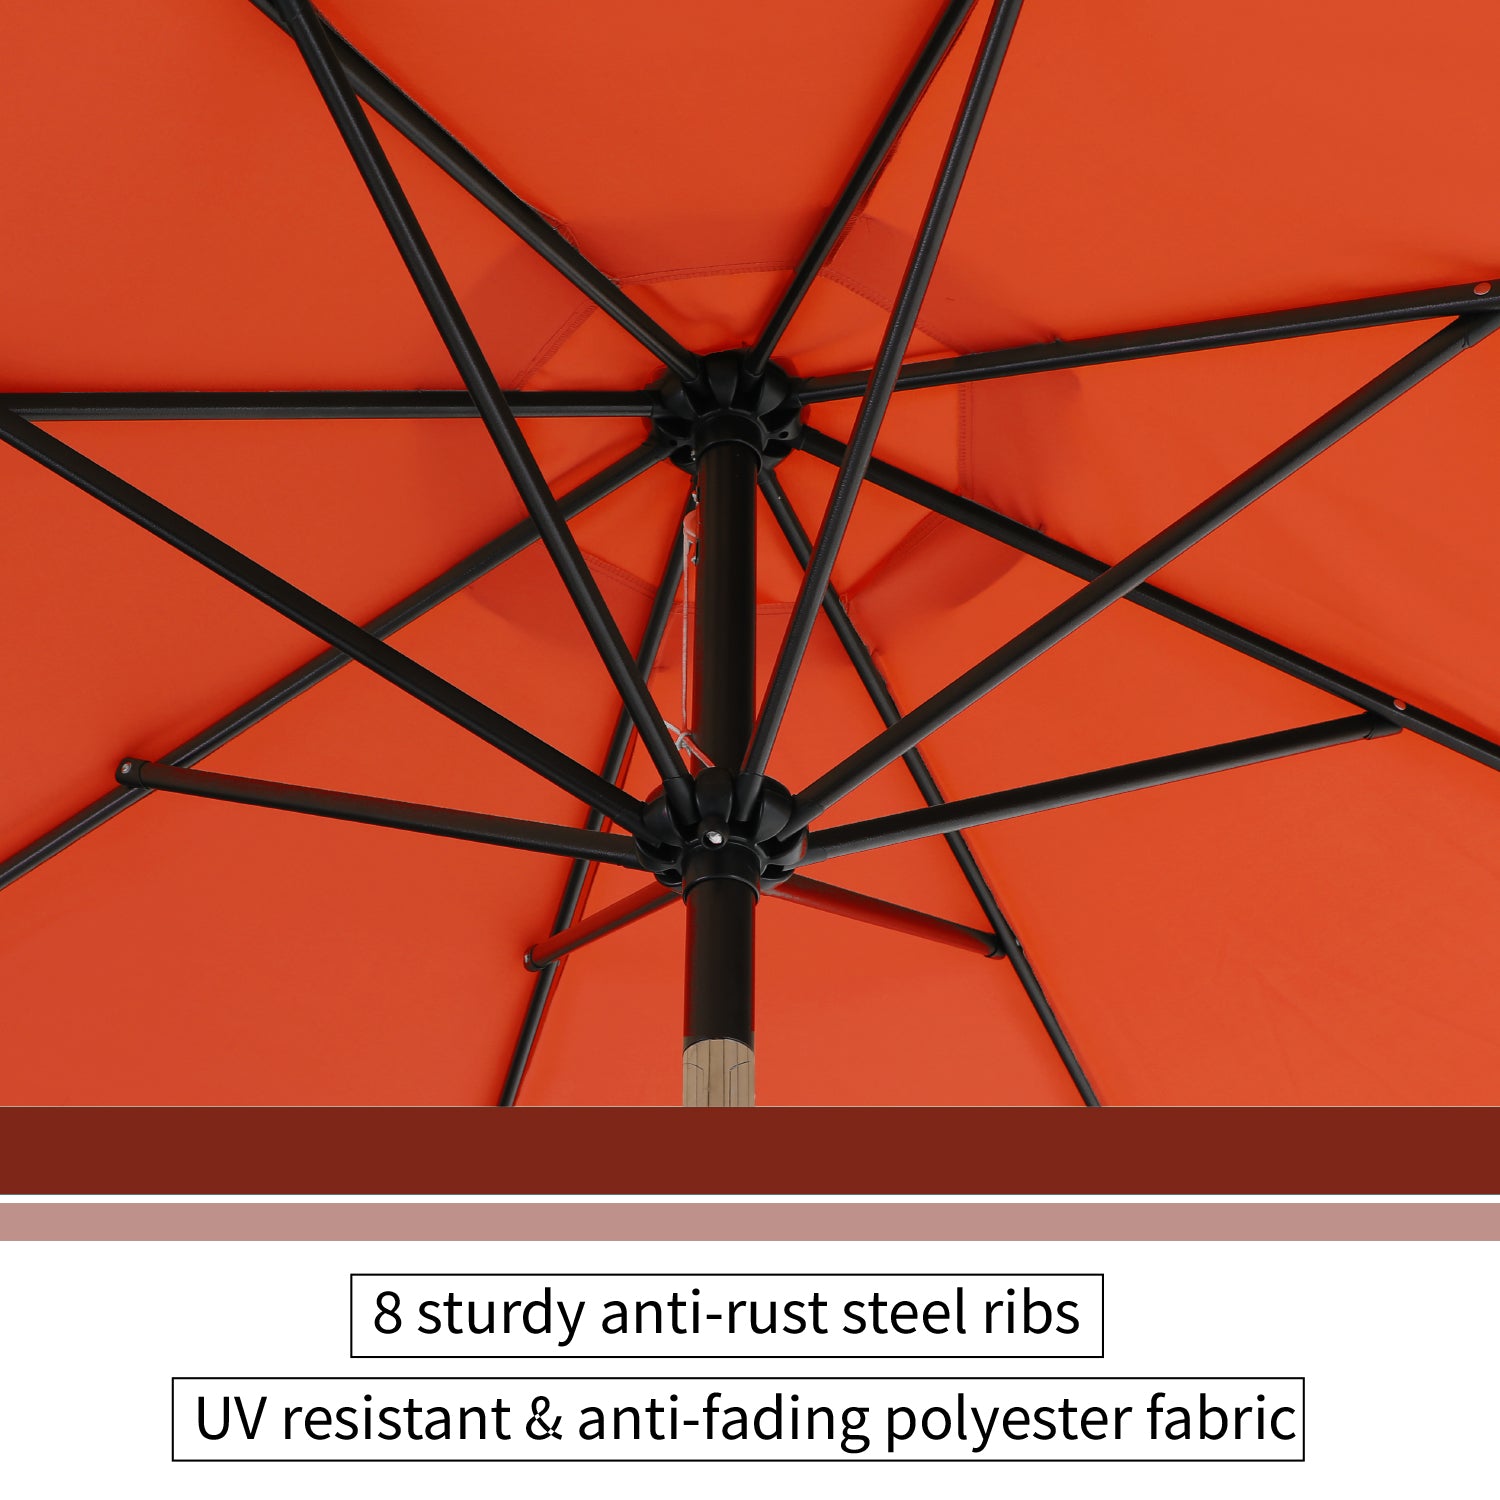 MFSTUDIO 9ft Manual-tilted Outdoor Patio Umbrella with Crank Handle